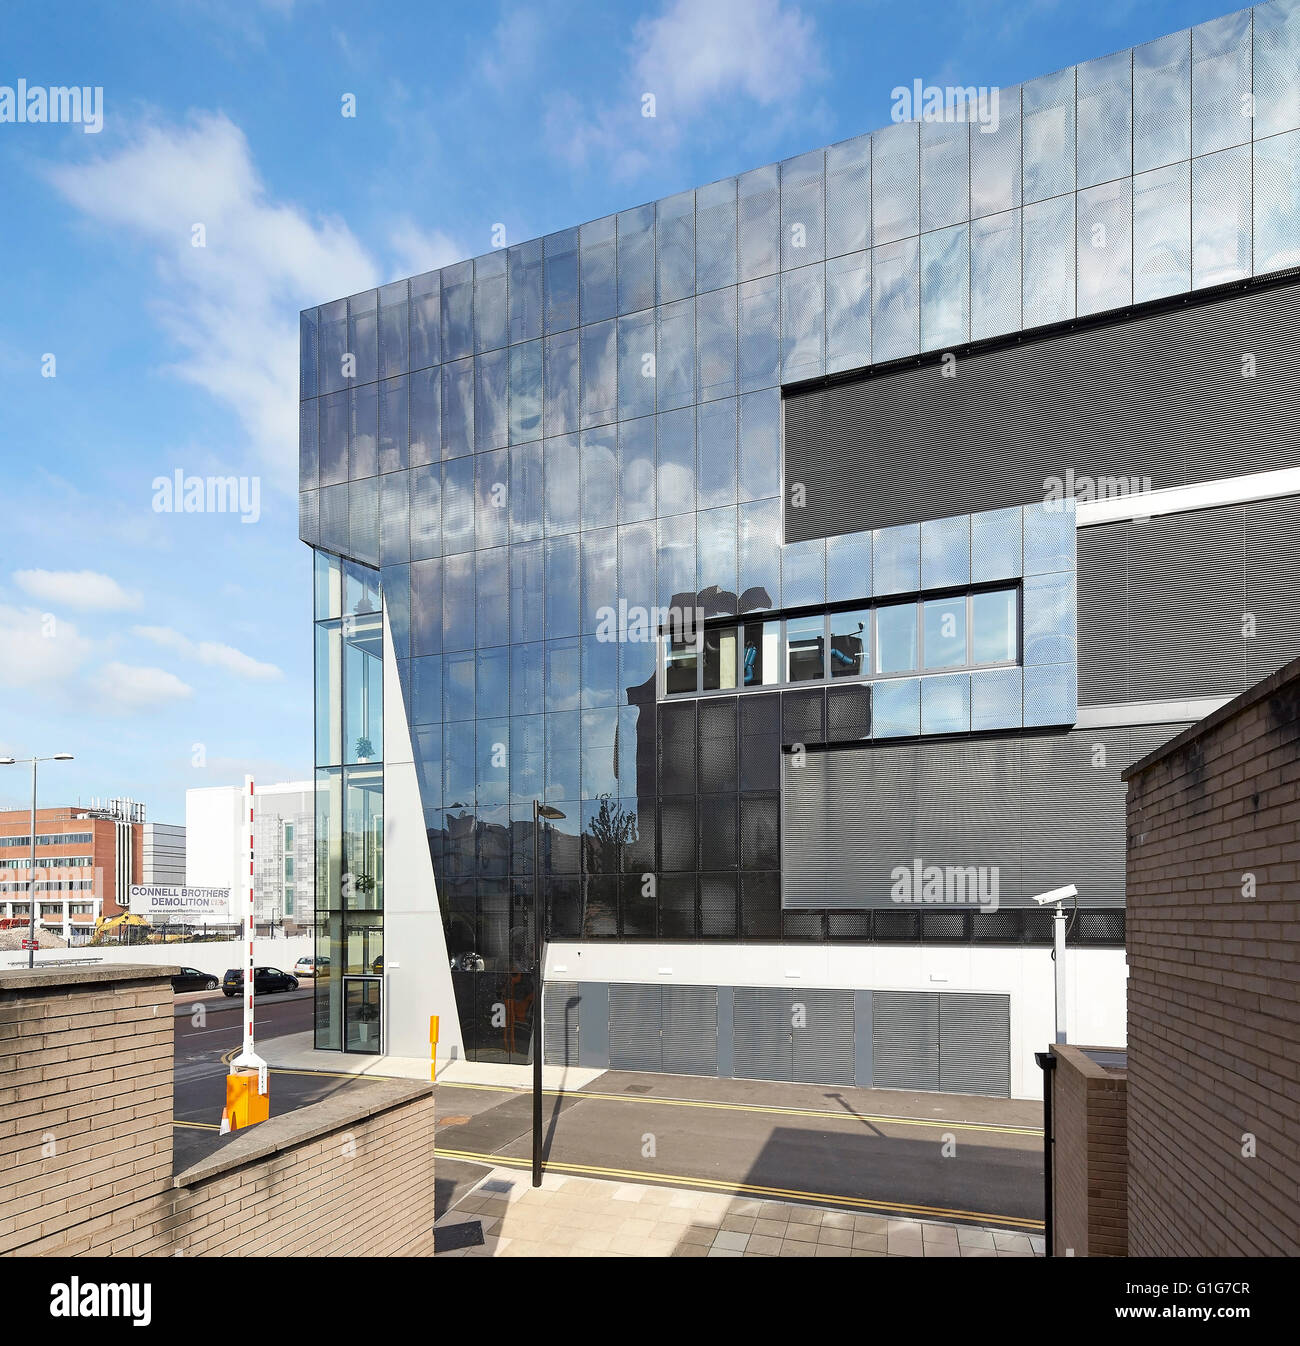 Vista in elevazione laterale della facciata riflettente. Grafene Institute, Università di Manchester, Manchester, Regno Unito. Architetto: Jestico + Whiles, 2015. Foto Stock